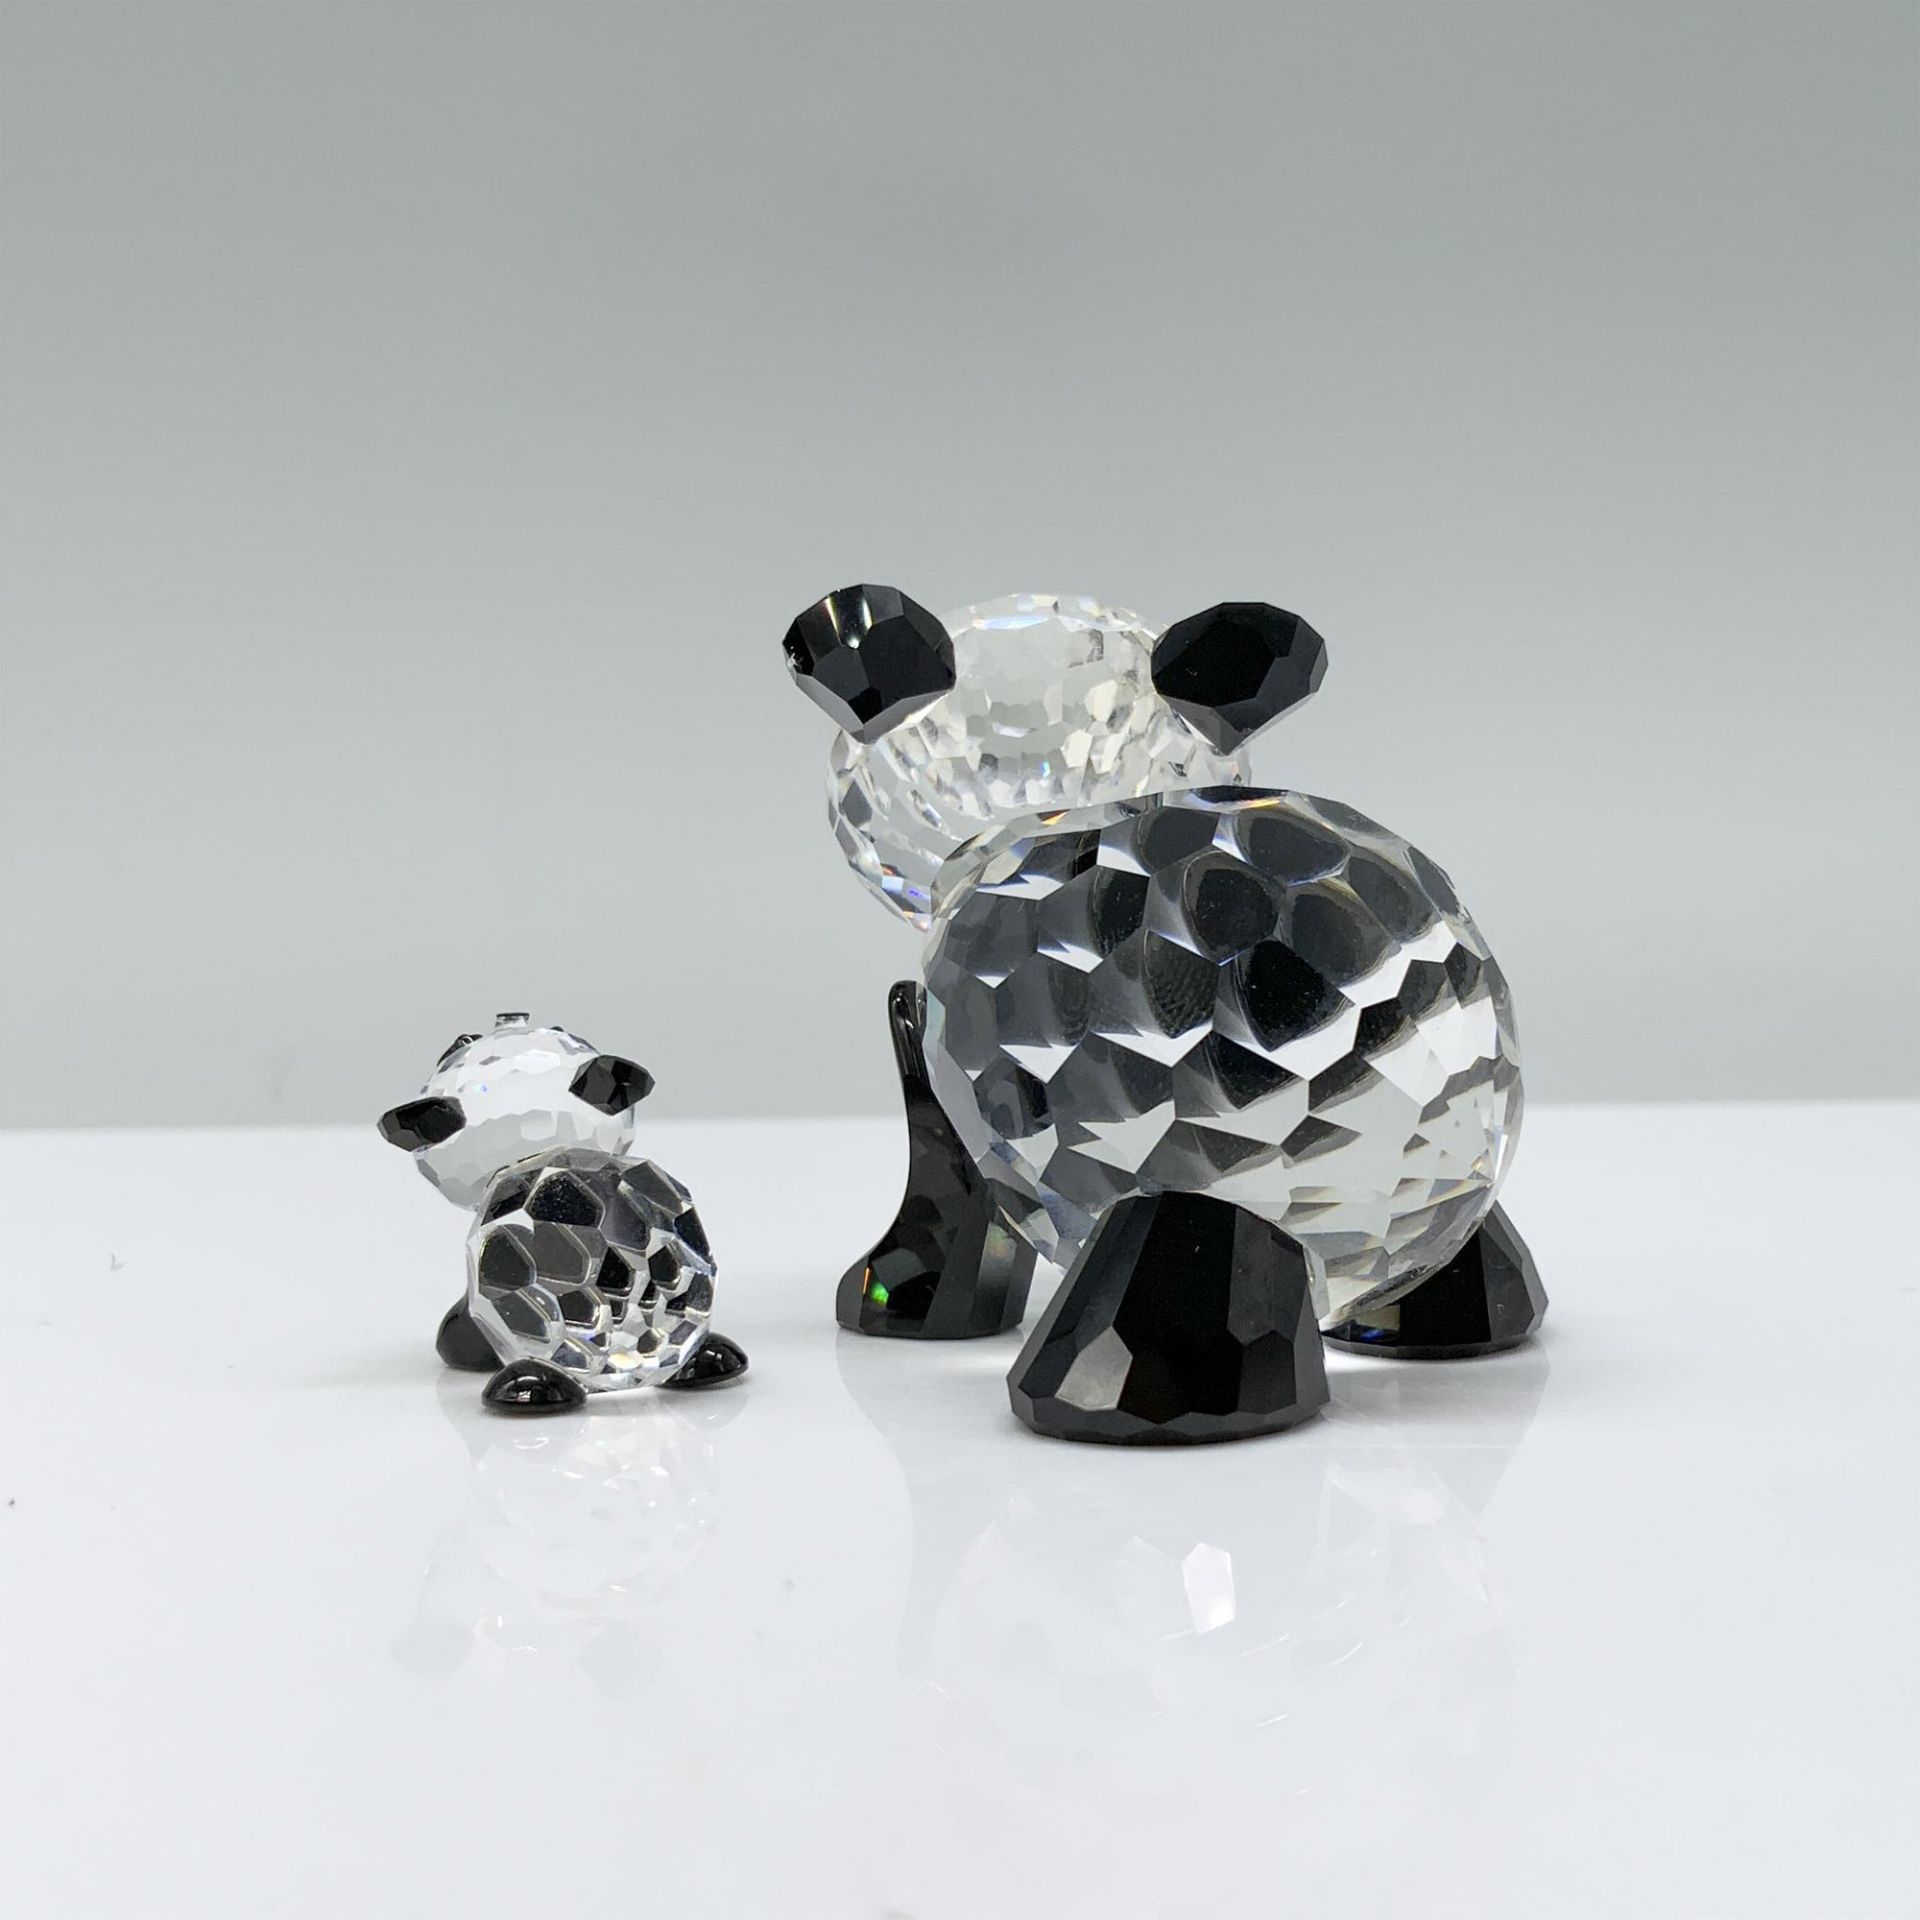 2pc Swarovski Crystal Figurines, Pandas 181080 and 181081 - Bild 2 aus 4